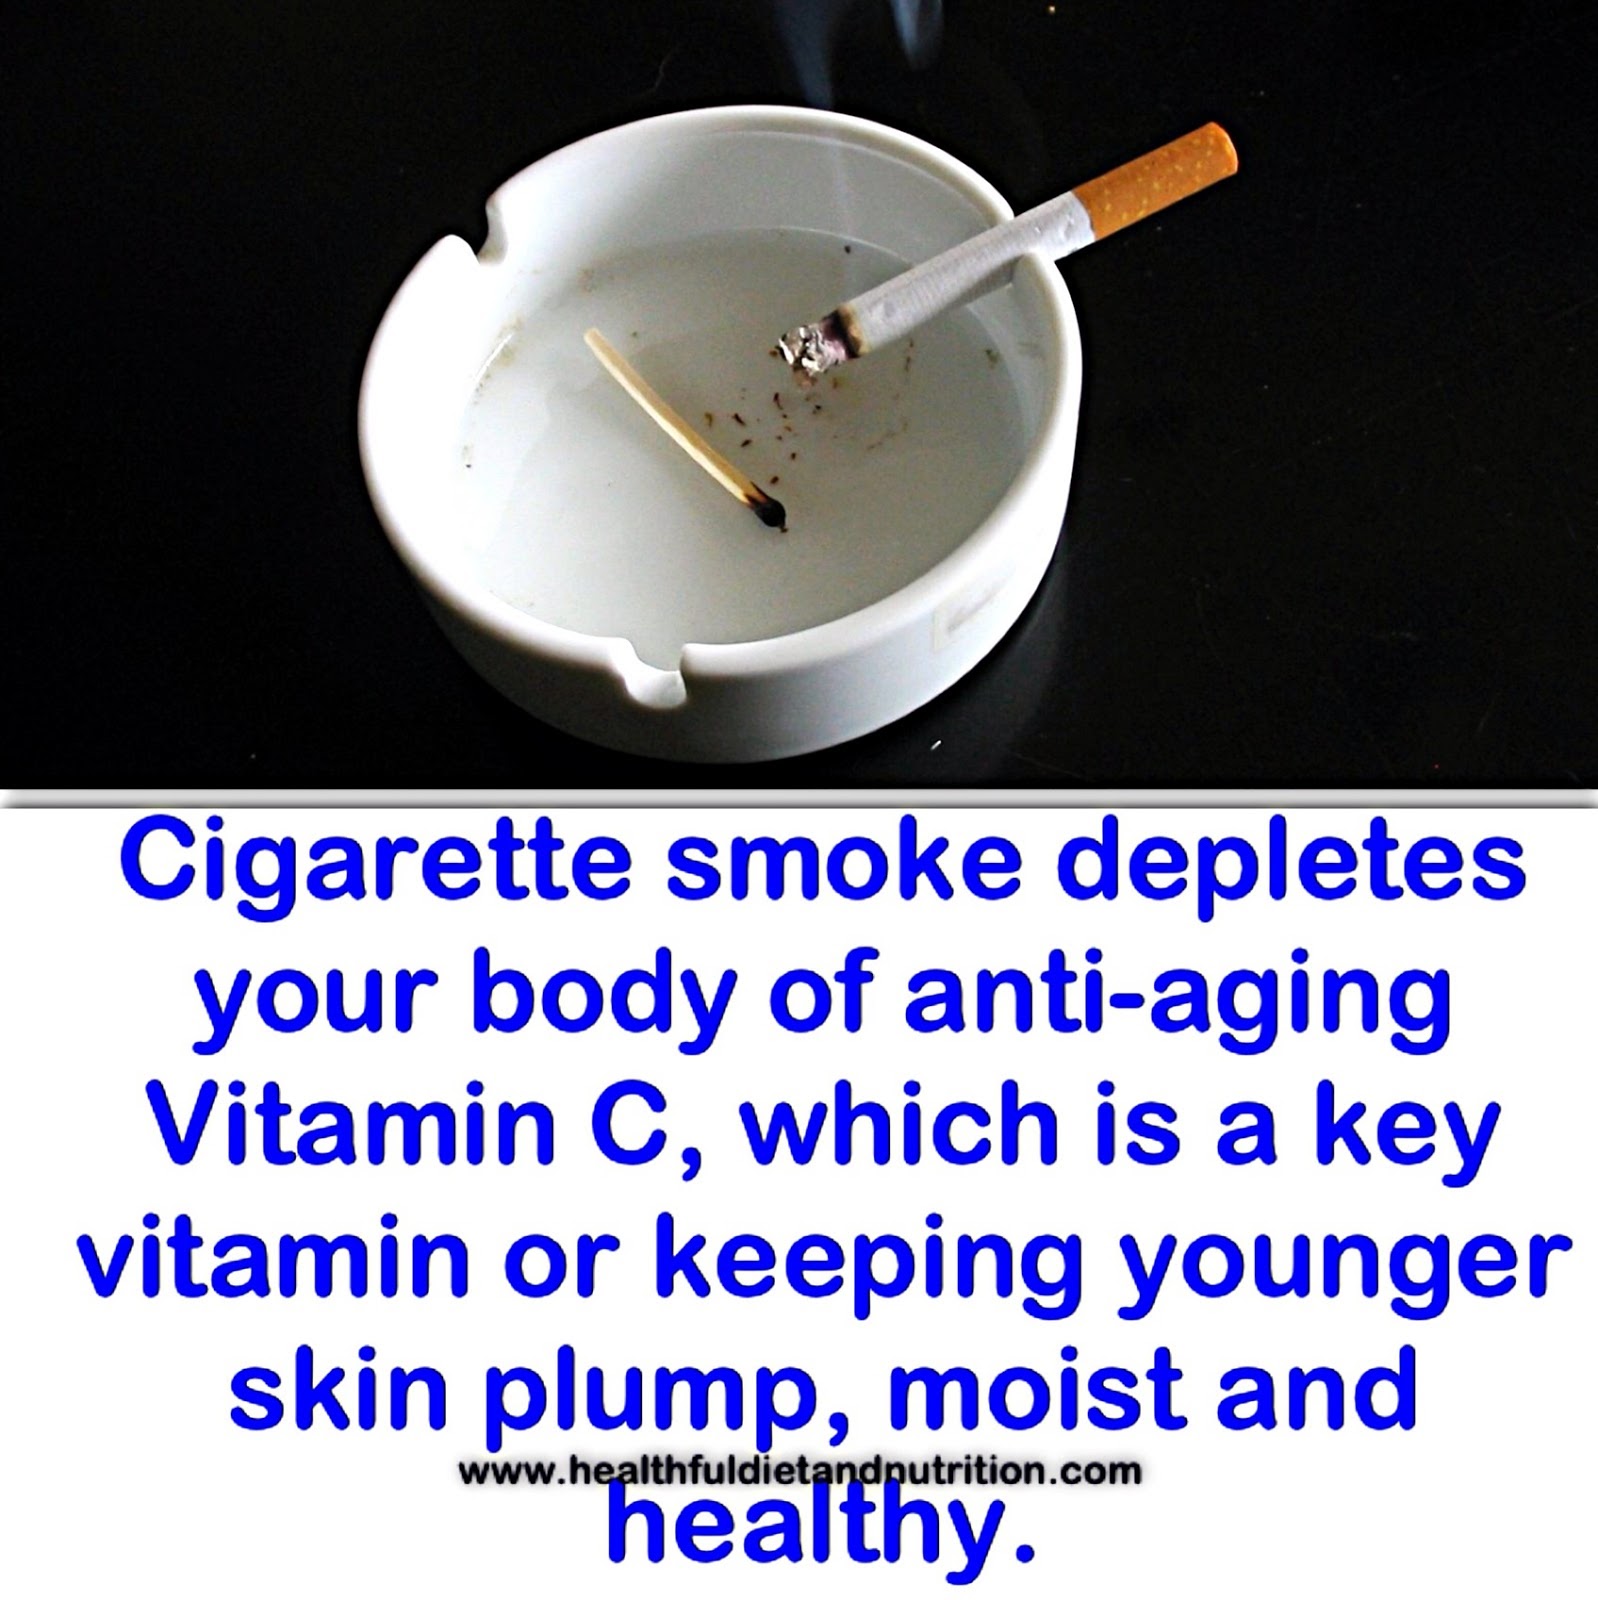 Cigarette Smoke & Vitamin C